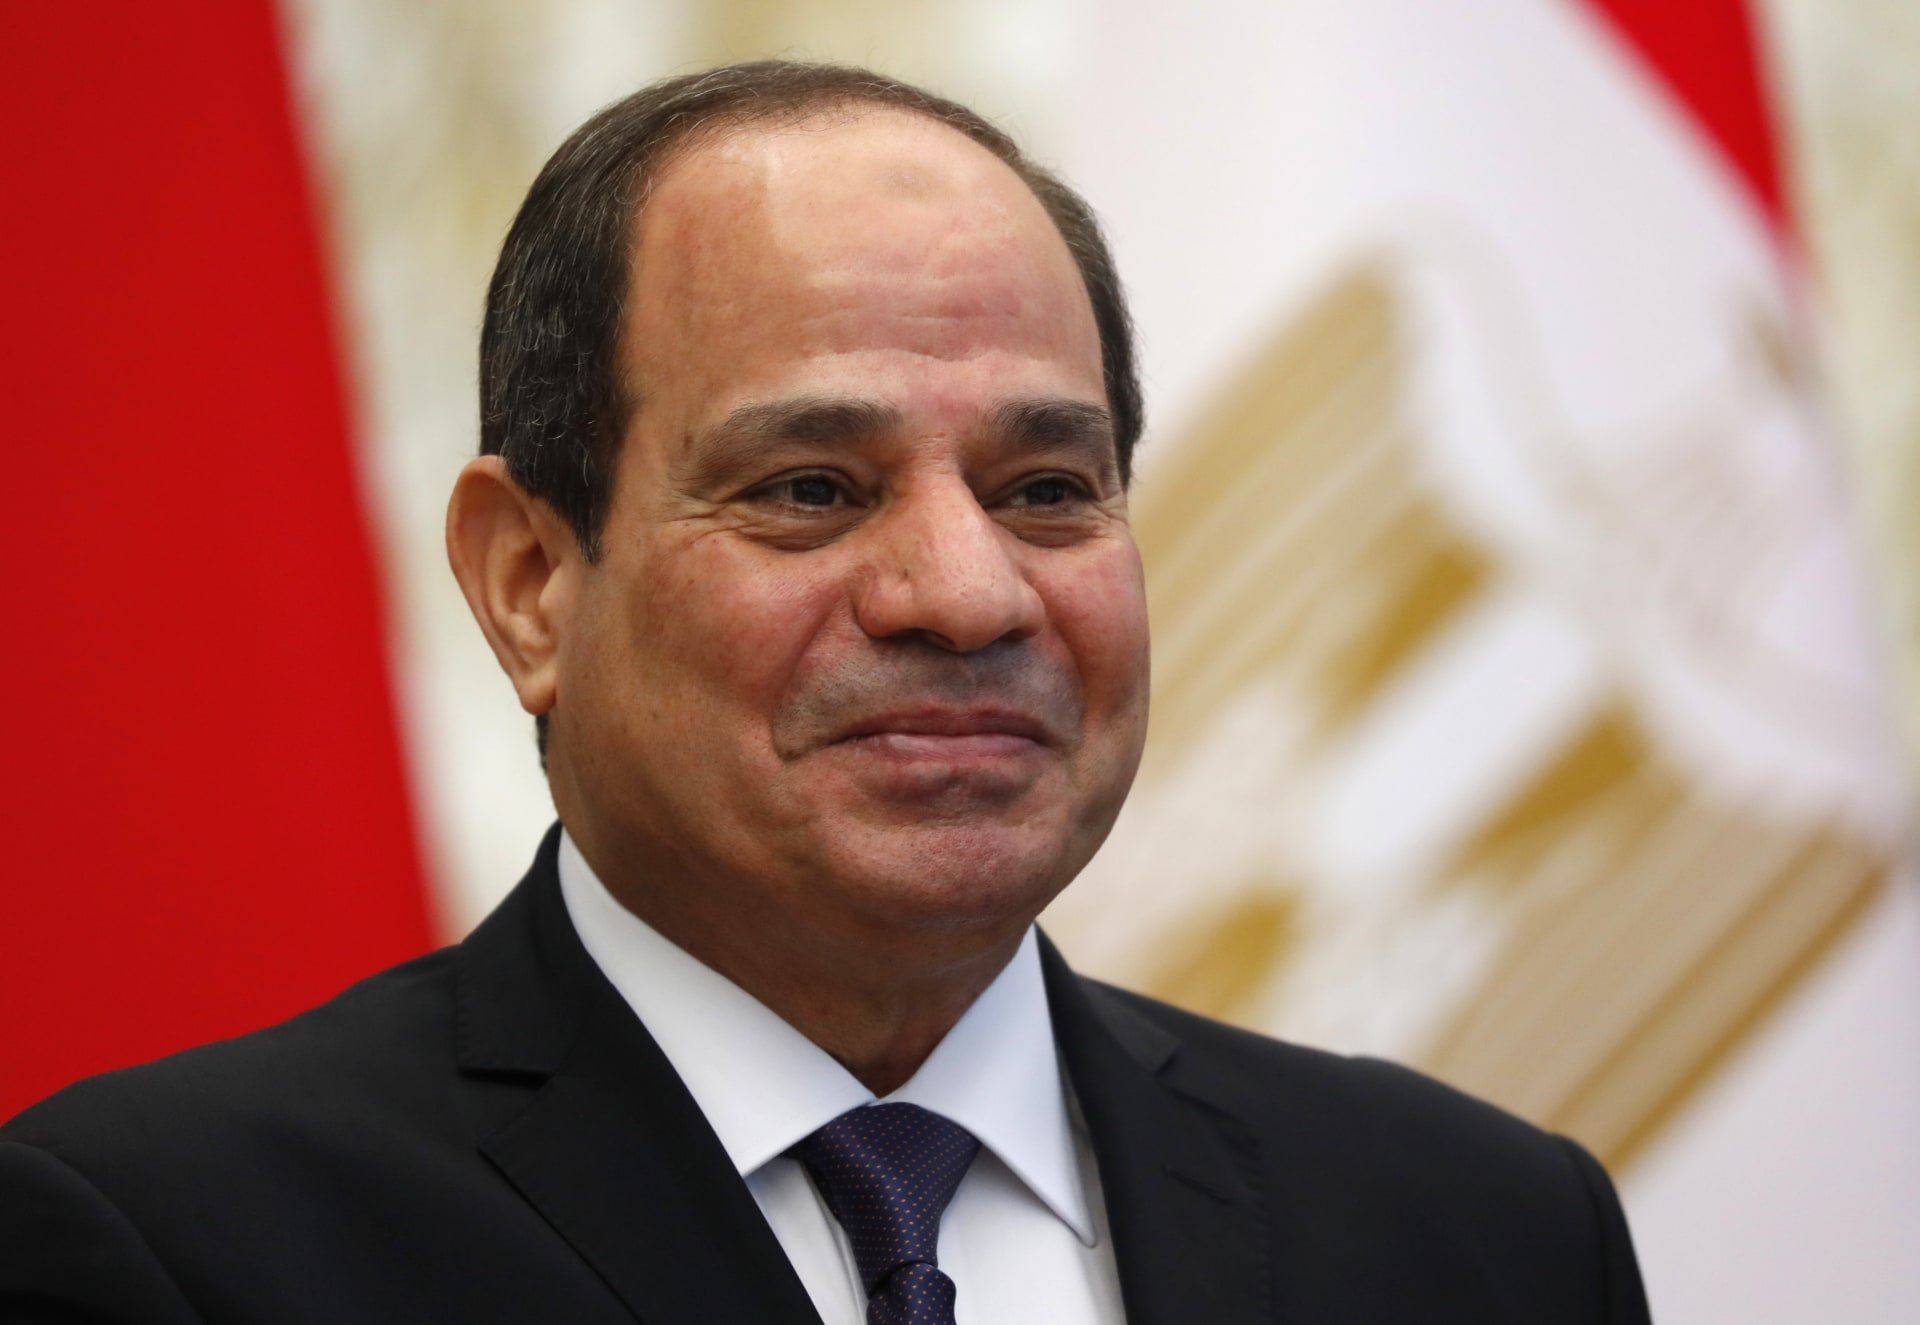 قرار جمهوري بالموافقة على مذكرة تفاهم للتعاون مع فرنسا لتنمية قطاع الهيدروجين الأخضر في مصر